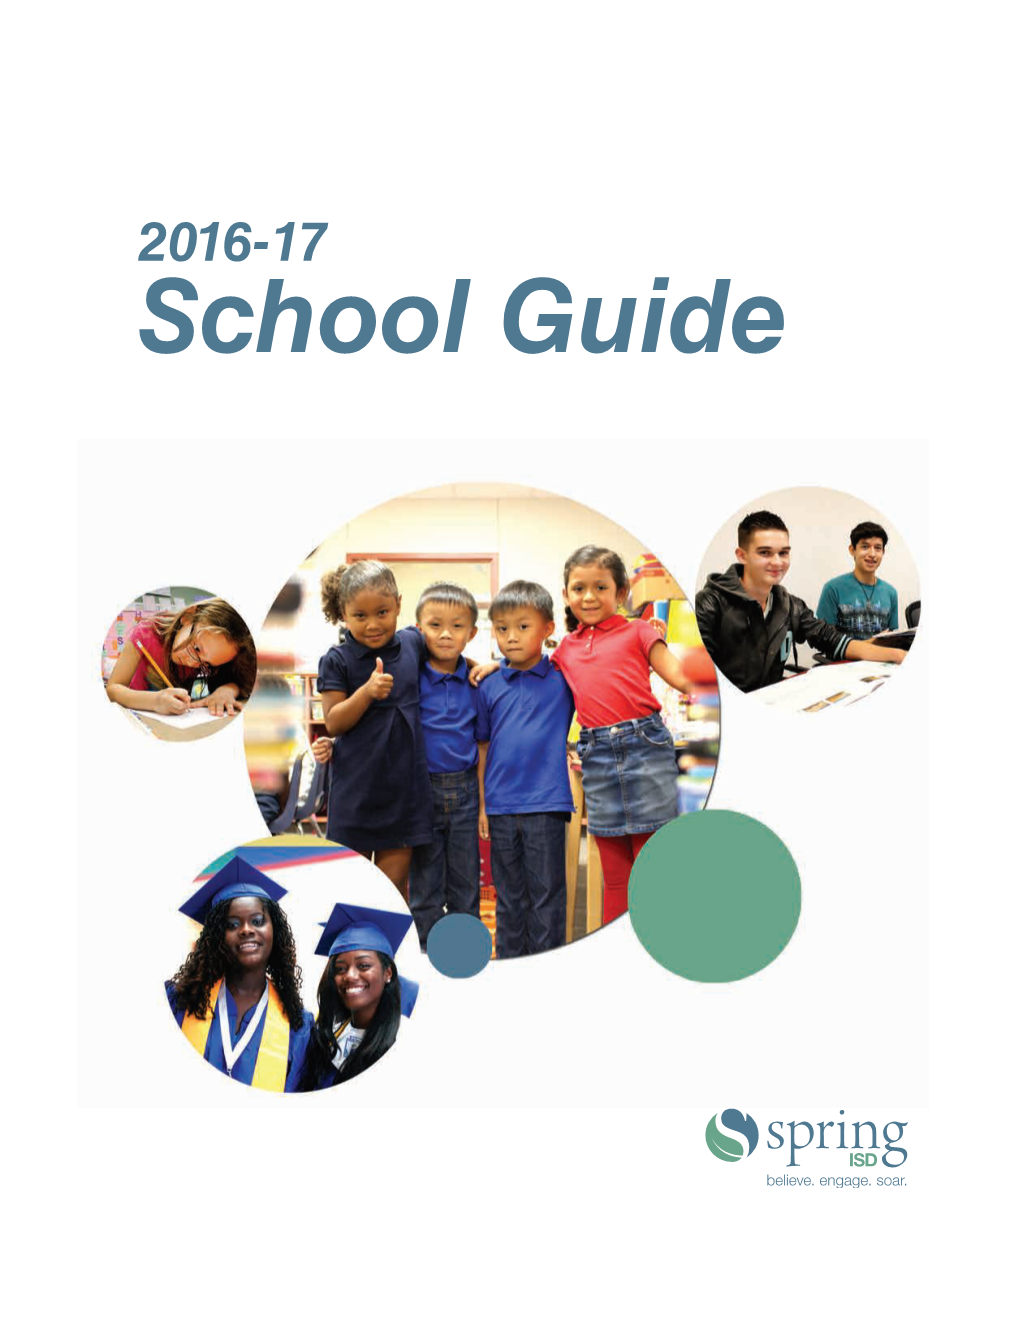 School Guide 2016-17